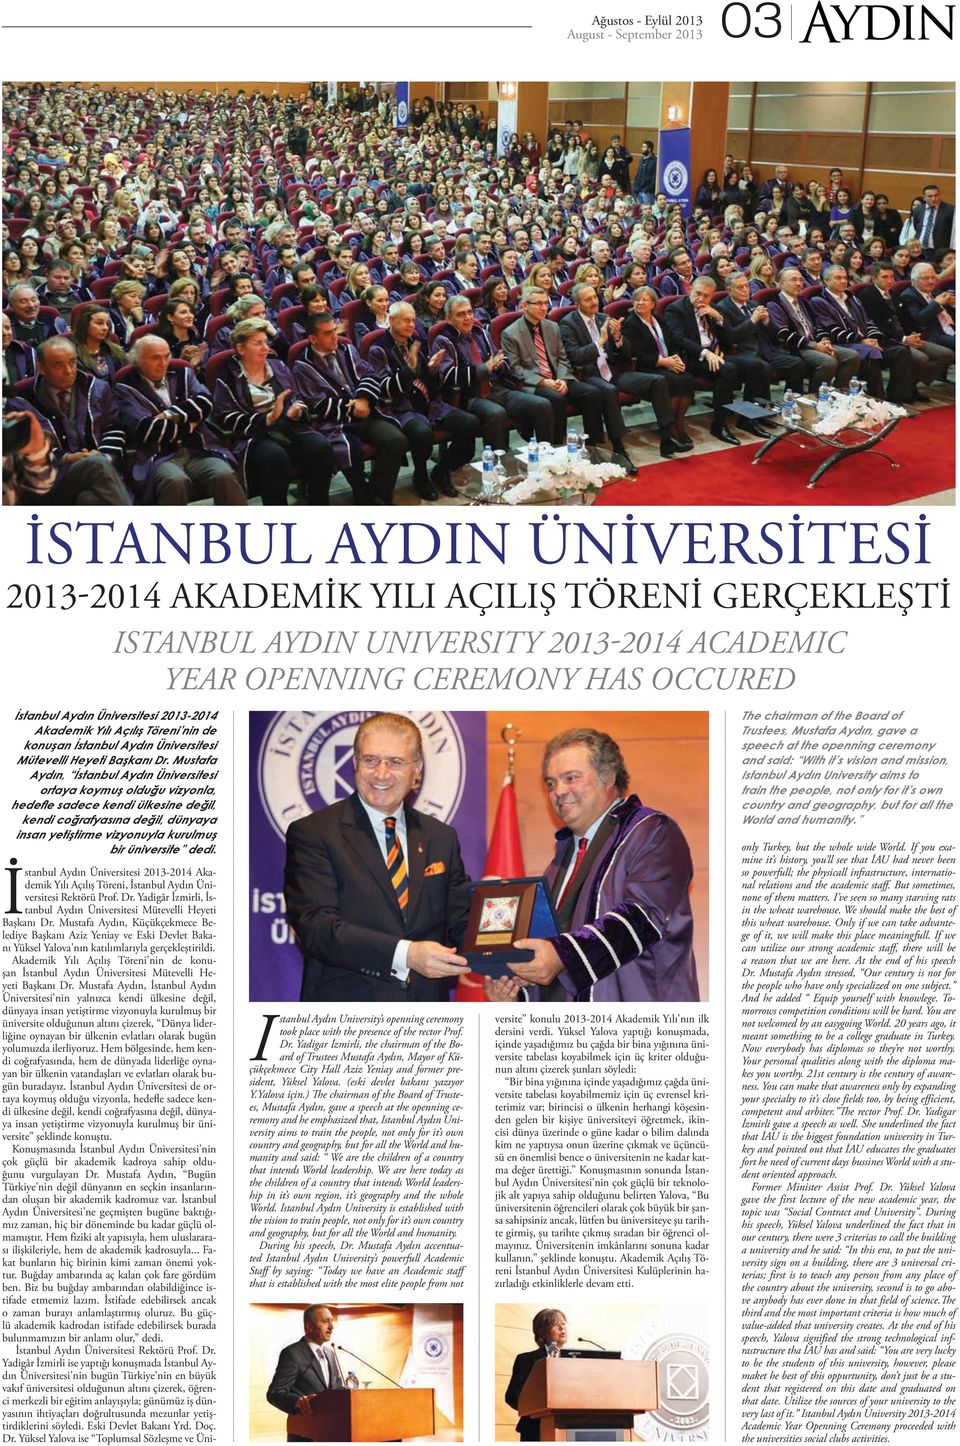 Mustafa Aydın, İstanbul Aydın Üniversitesi ortaya koymuş olduğu vizyonla, hedefle sadece kendi ülkesine değil, kendi coğrafyasına değil, dünyaya insan yetiştirme vizyonuyla kurulmuş bir üniversite